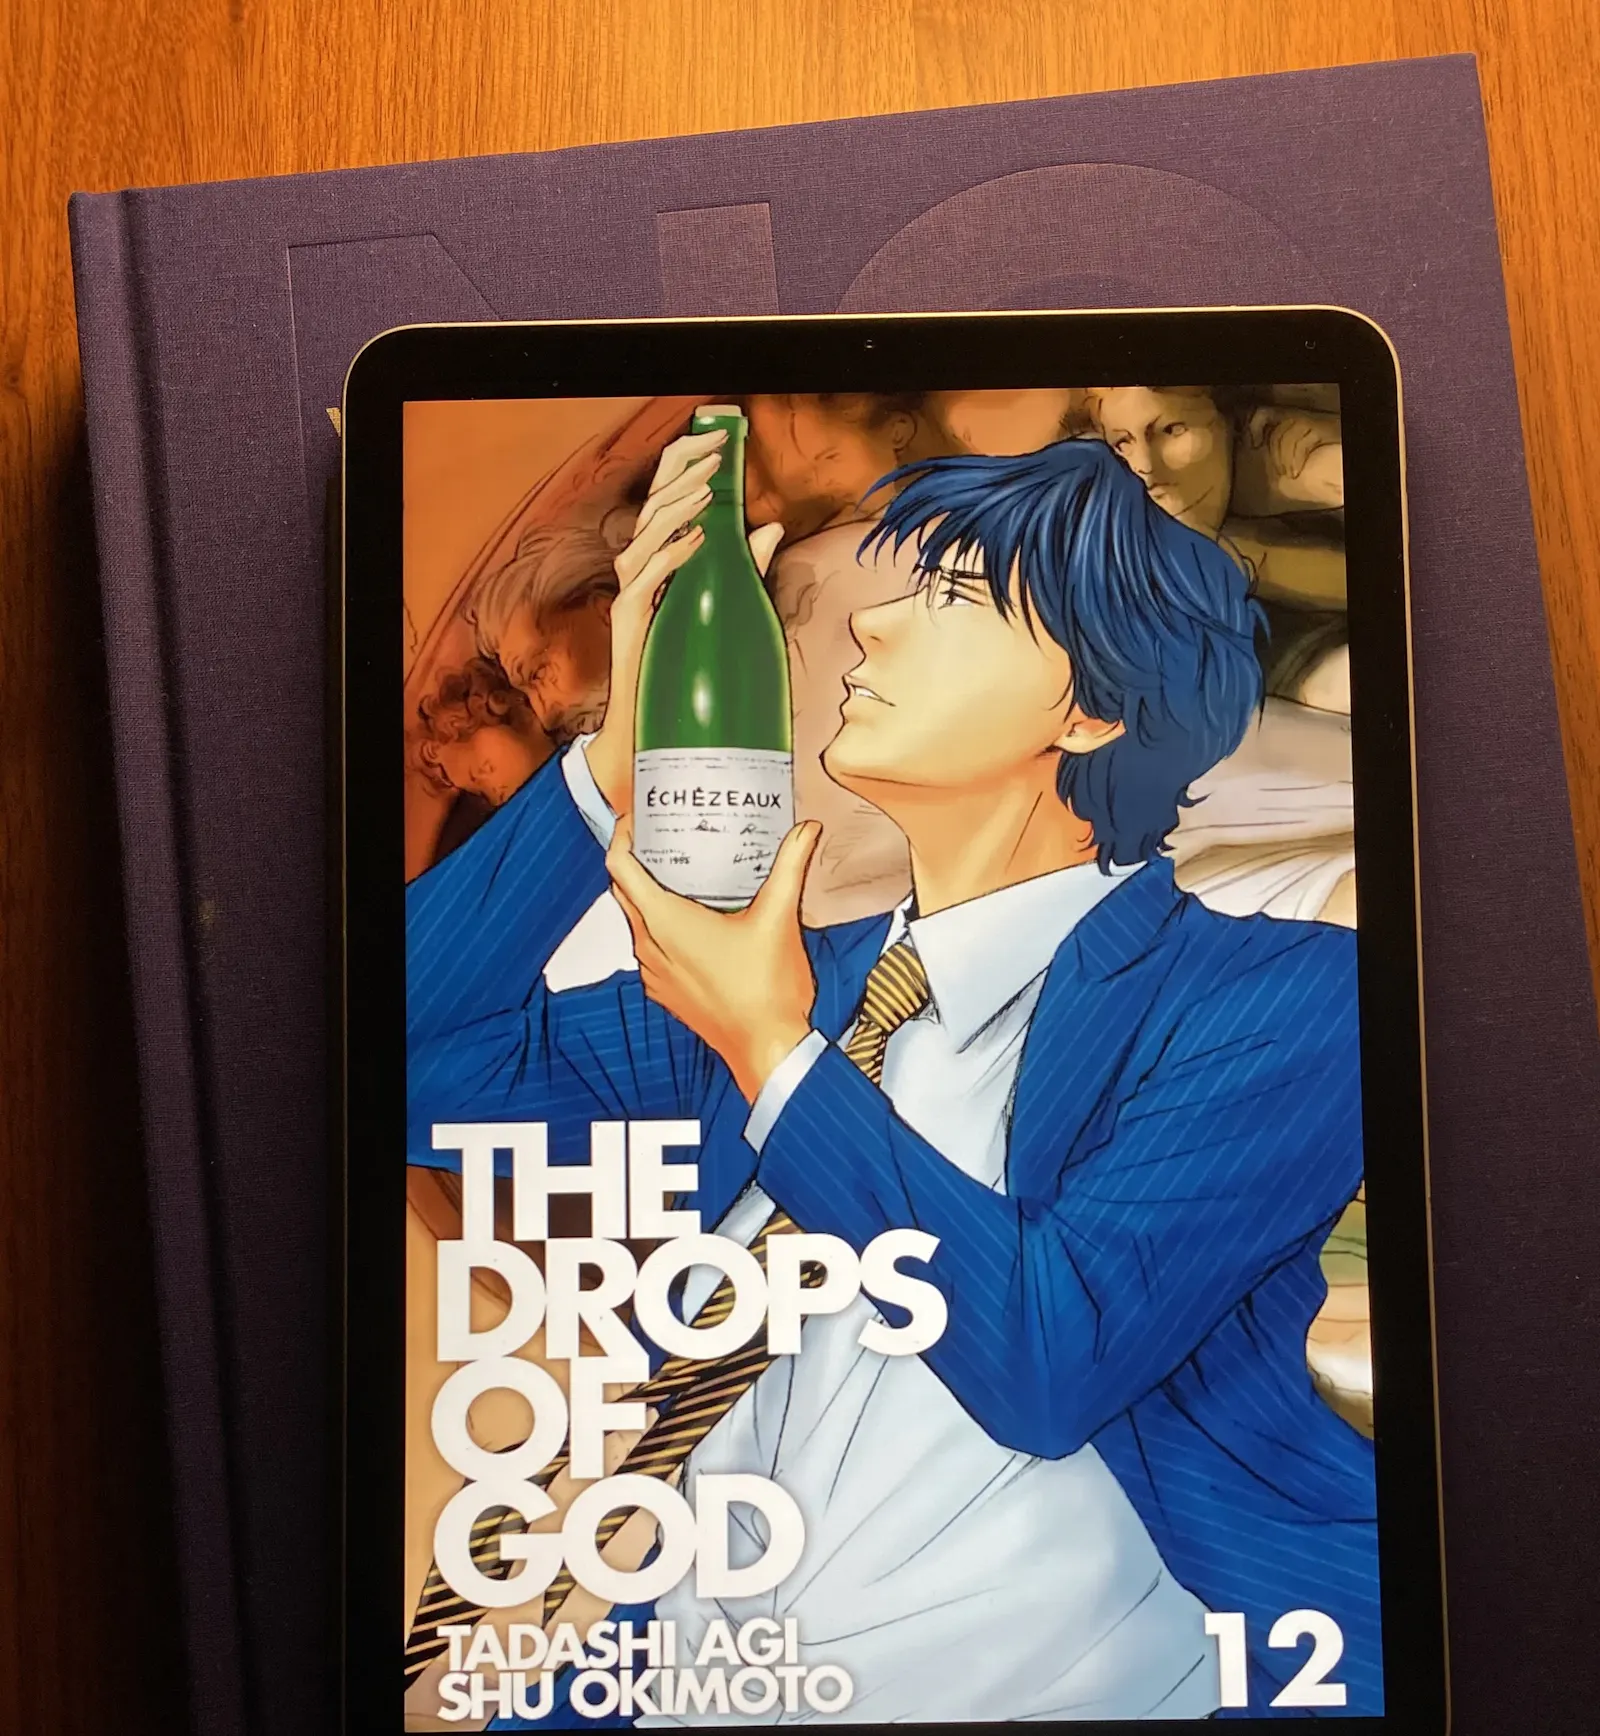 Auf dem iPad ist das Cover des zwölften Teils des Mangas Drops of God zu sehen.